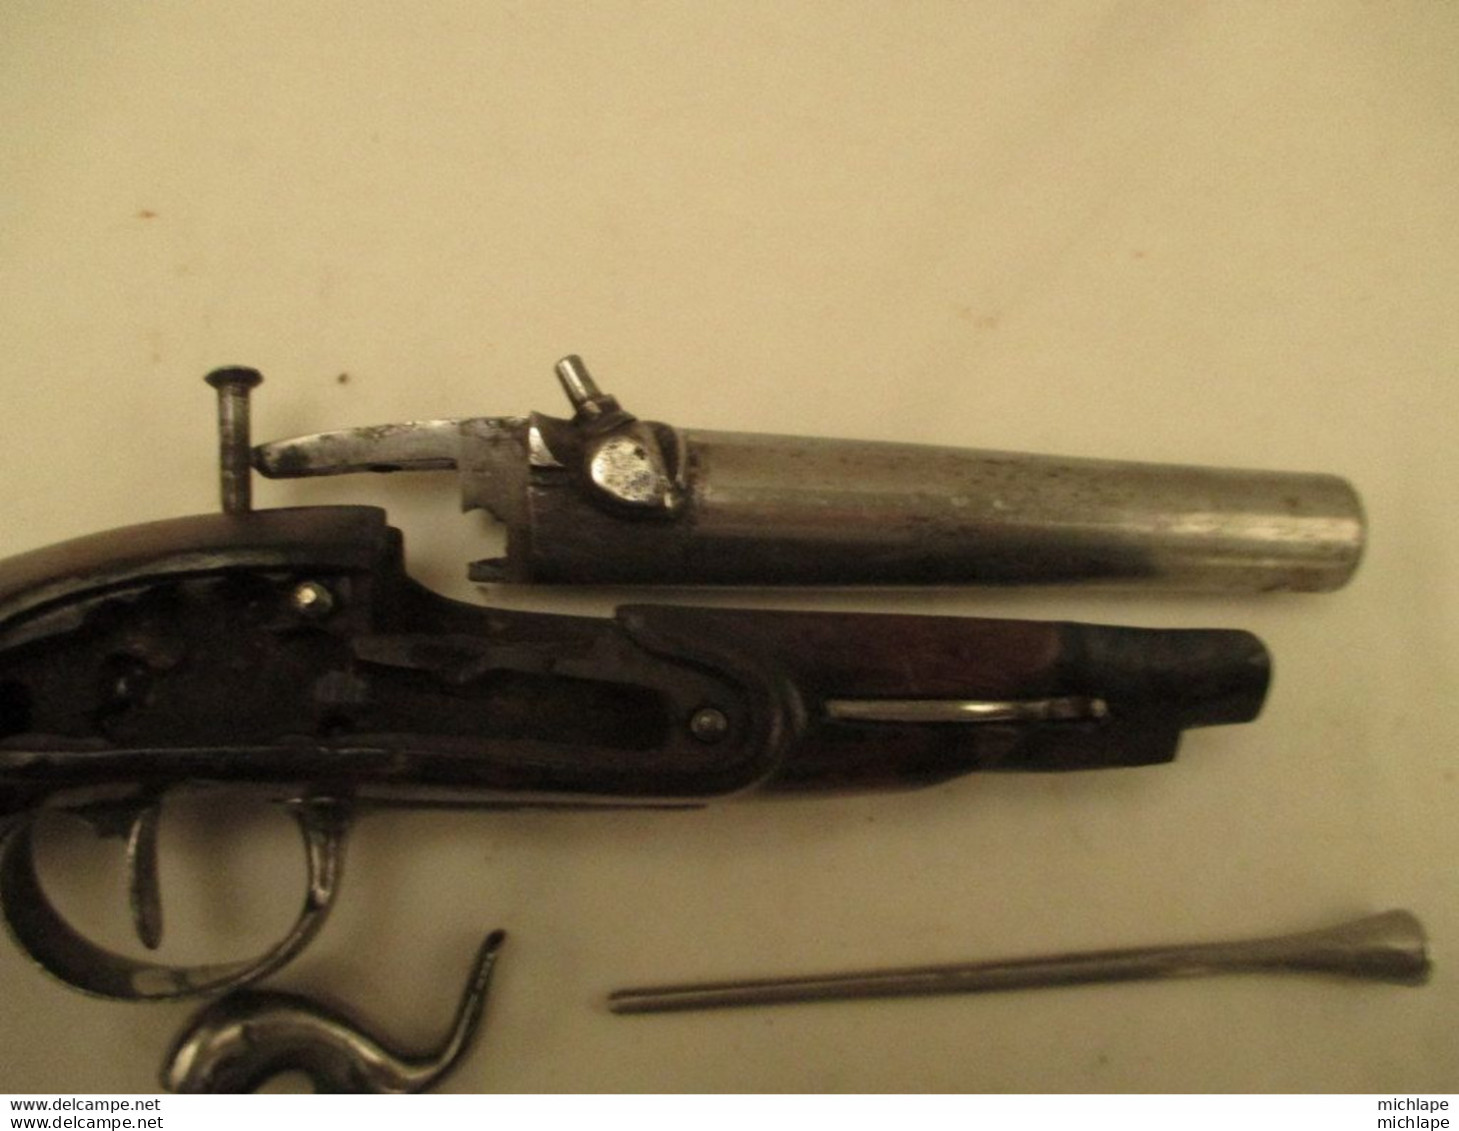 pistolet de gendarmerie an IX T (pas courant ) manufacture imp. de Maubeuge - bon état générale - transformé en arsenal